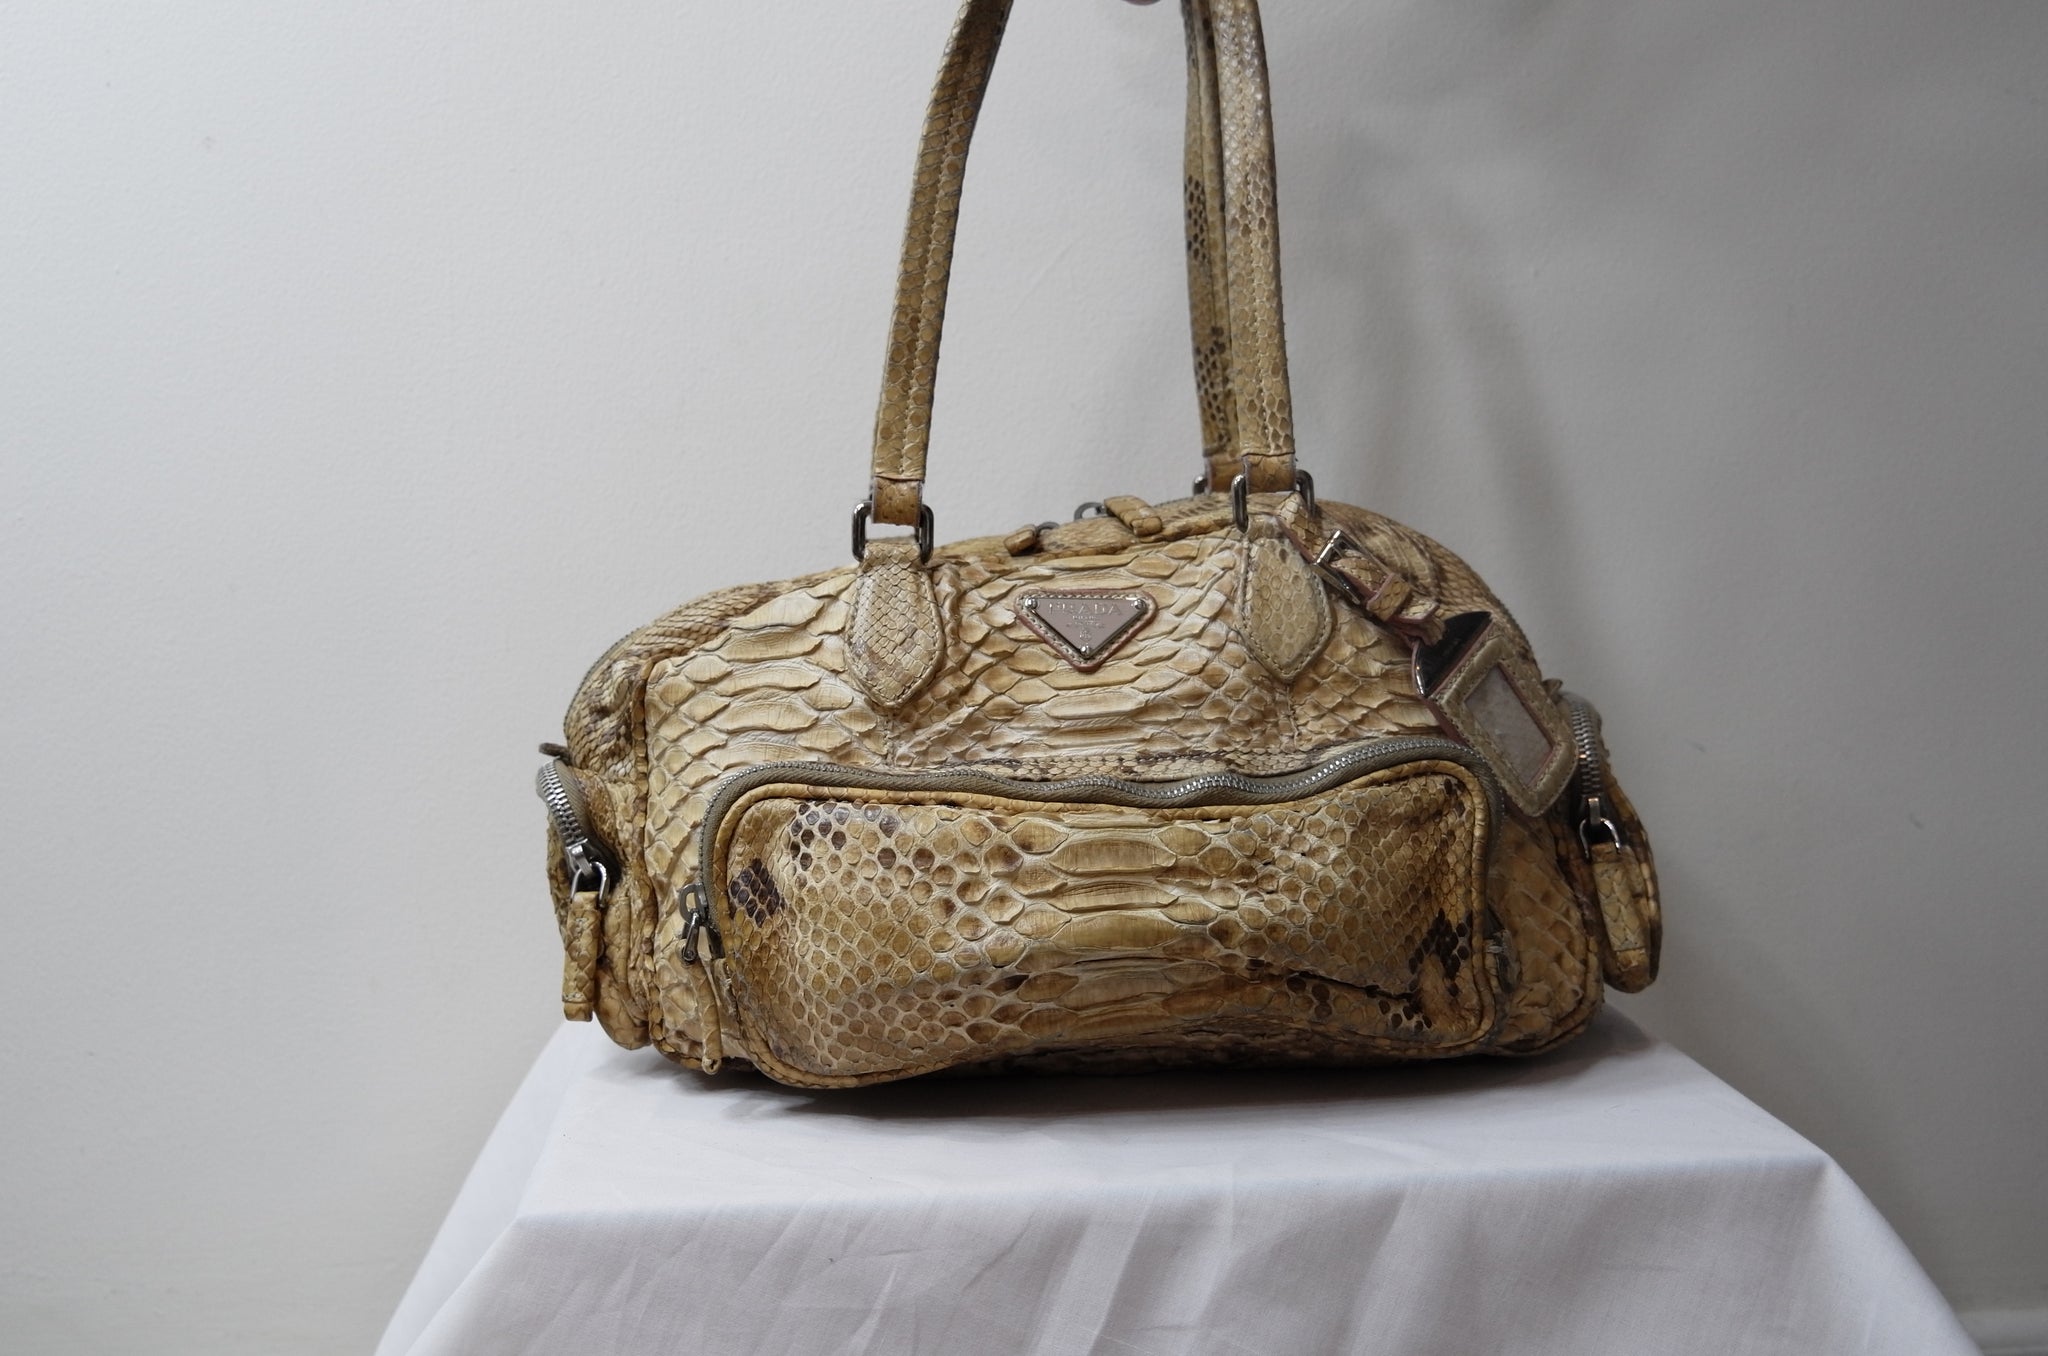 Prada, Bags, Prada Limited Edition Handbag Gold